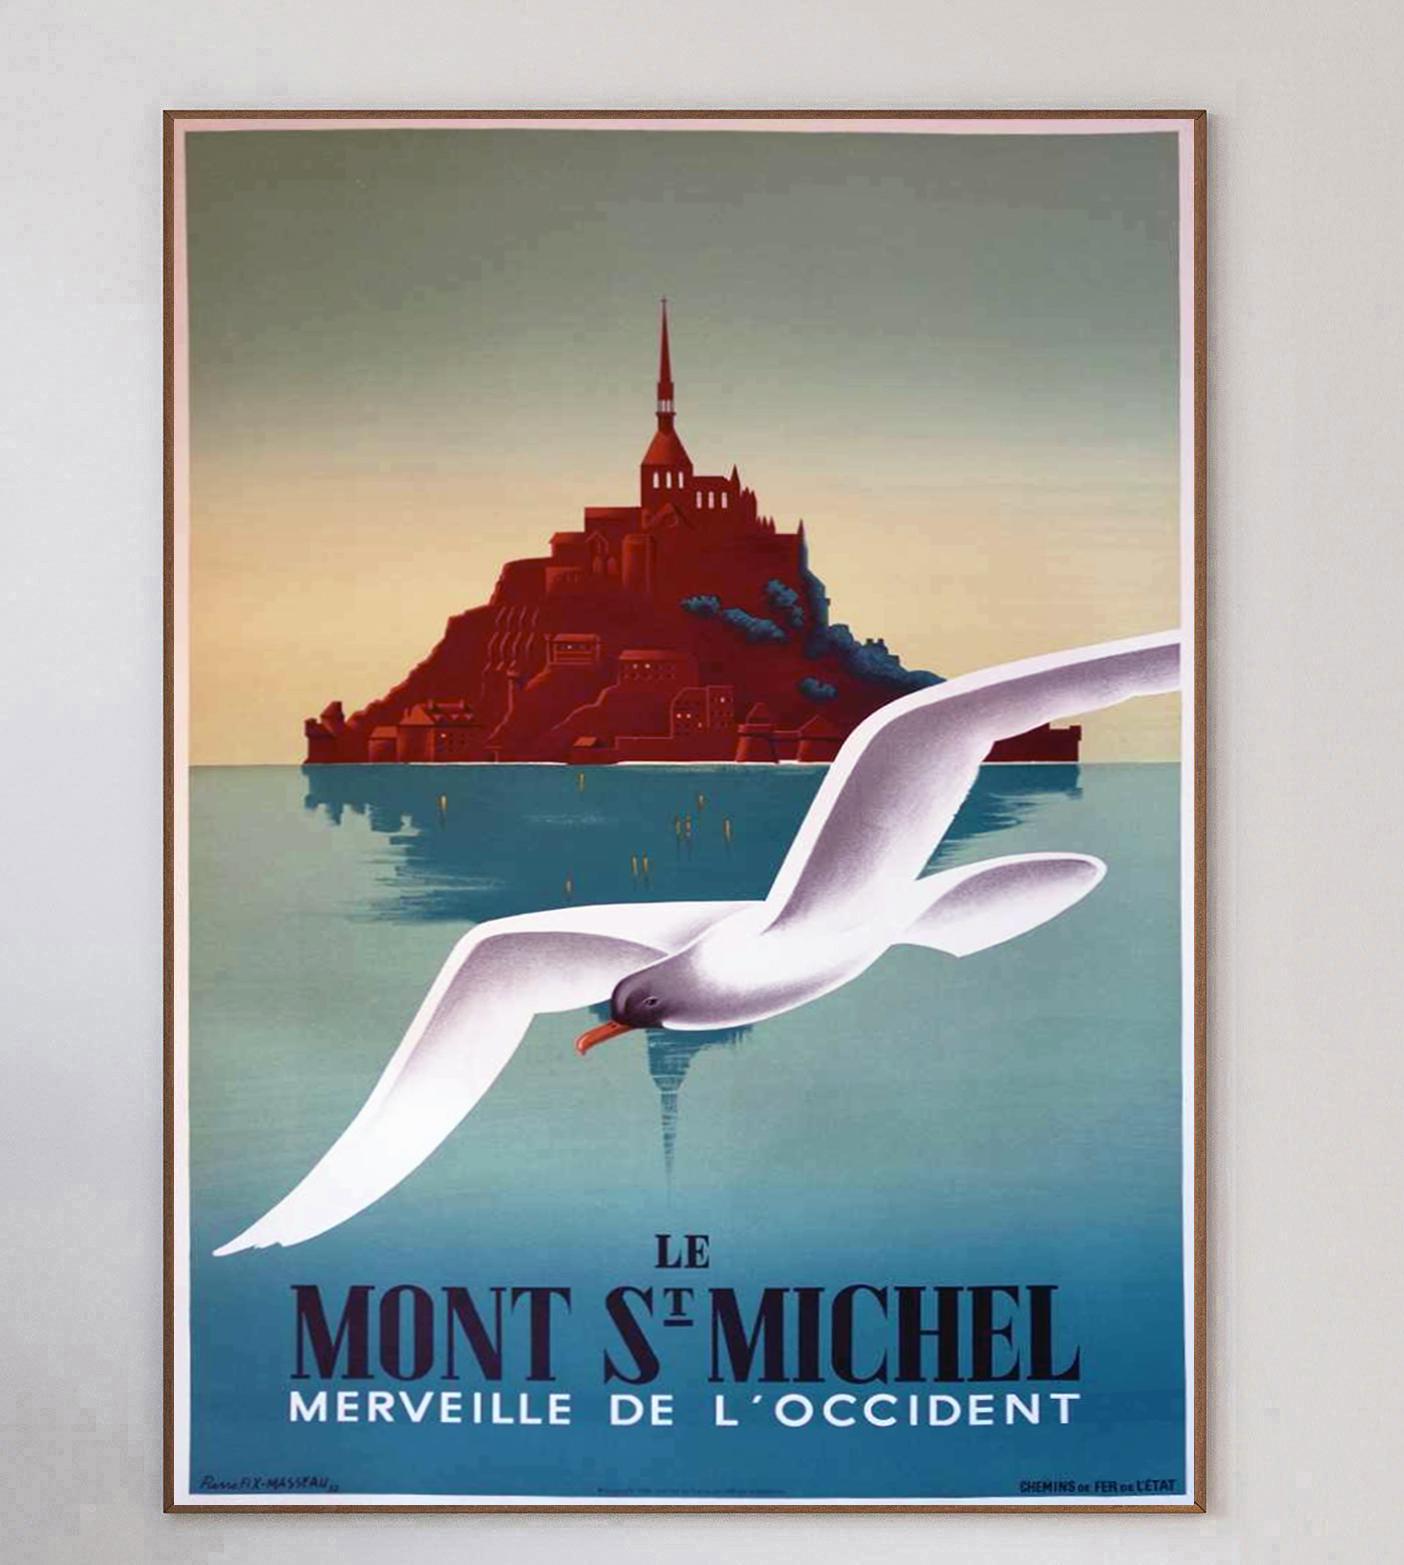 Cette superbe et rare affiche lithographique sur pierre a été conçue par le grand affichiste français Fix Masseau et publiée en 1988.

Promouvant le Mont Saint-Michel, l'île emblématique de Normandie, en France, dans la Manche, cette scène